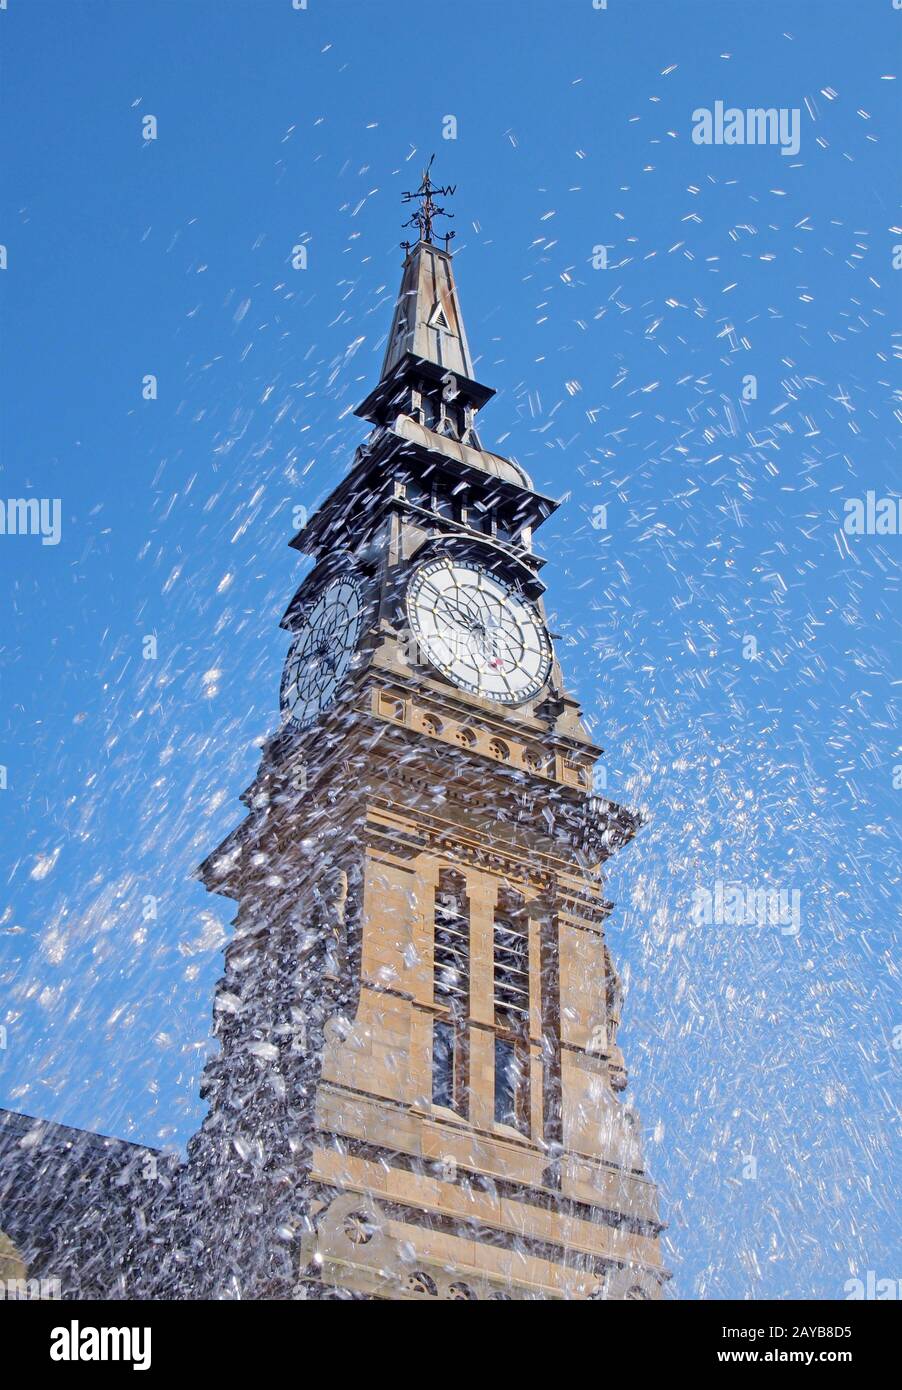 eaux floues provenant d'une fontaine devant la tour de l'horloge du bâtiment historique atkinson à southport merseyside Banque D'Images